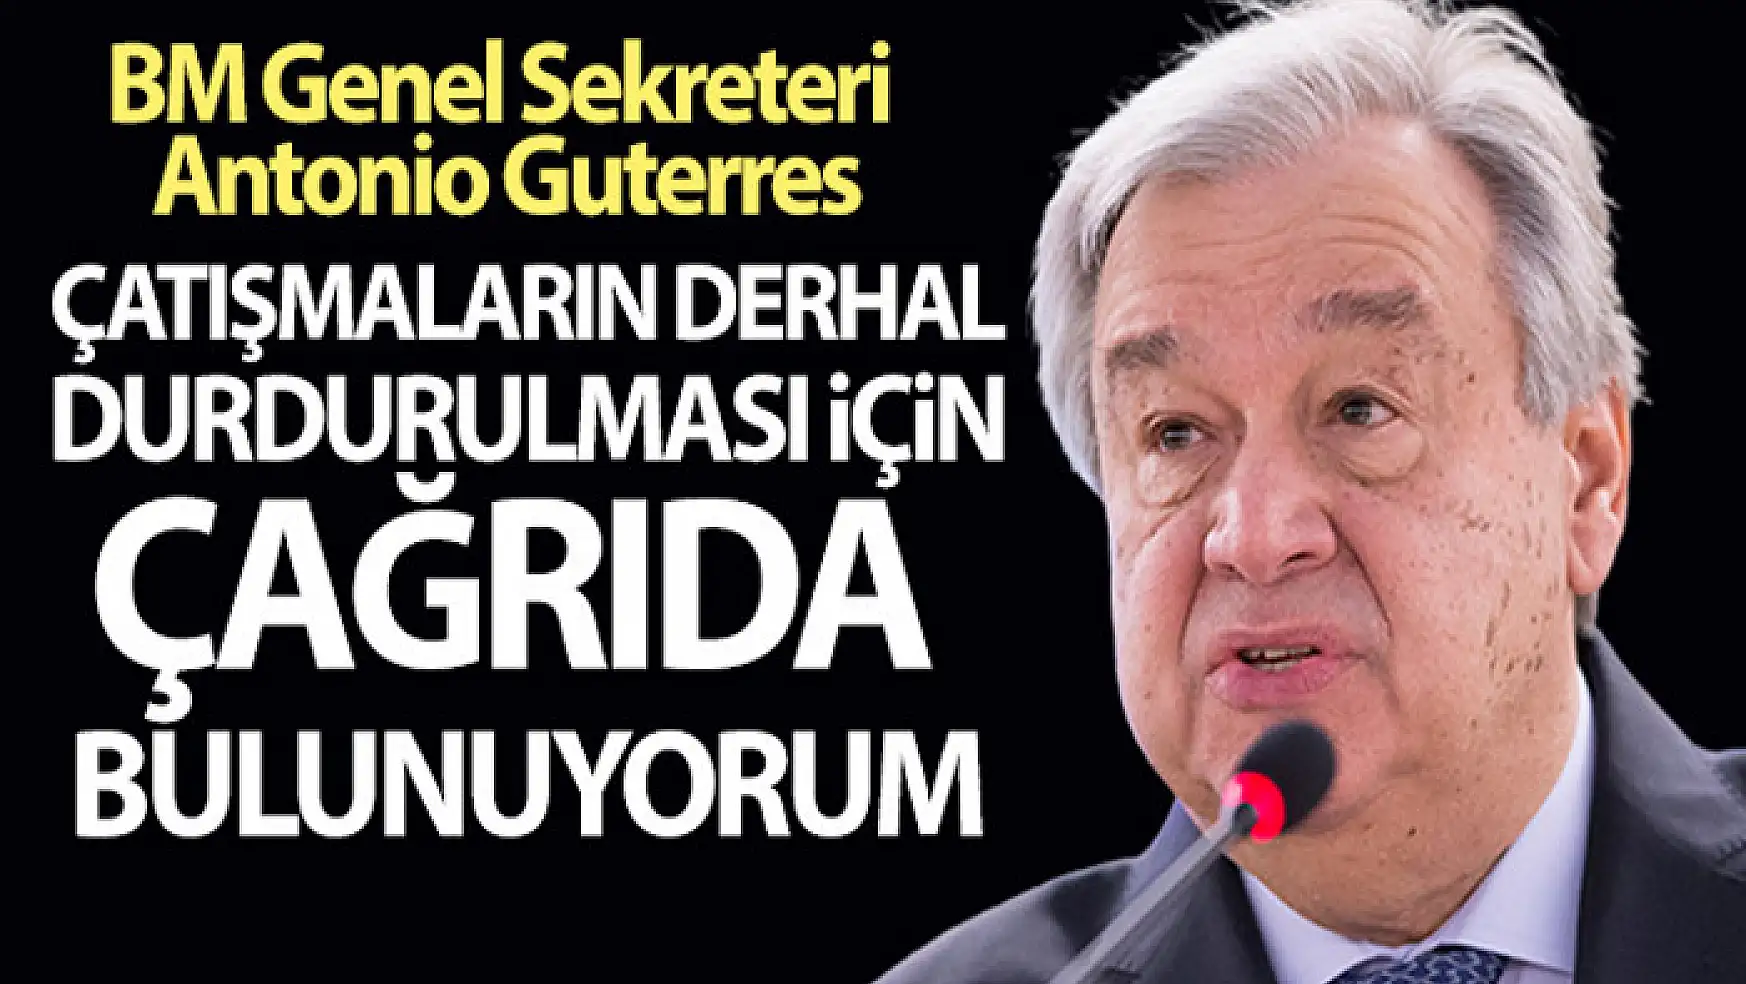 BM Genel Sekreteri Antonio Guterres'den çağrı!